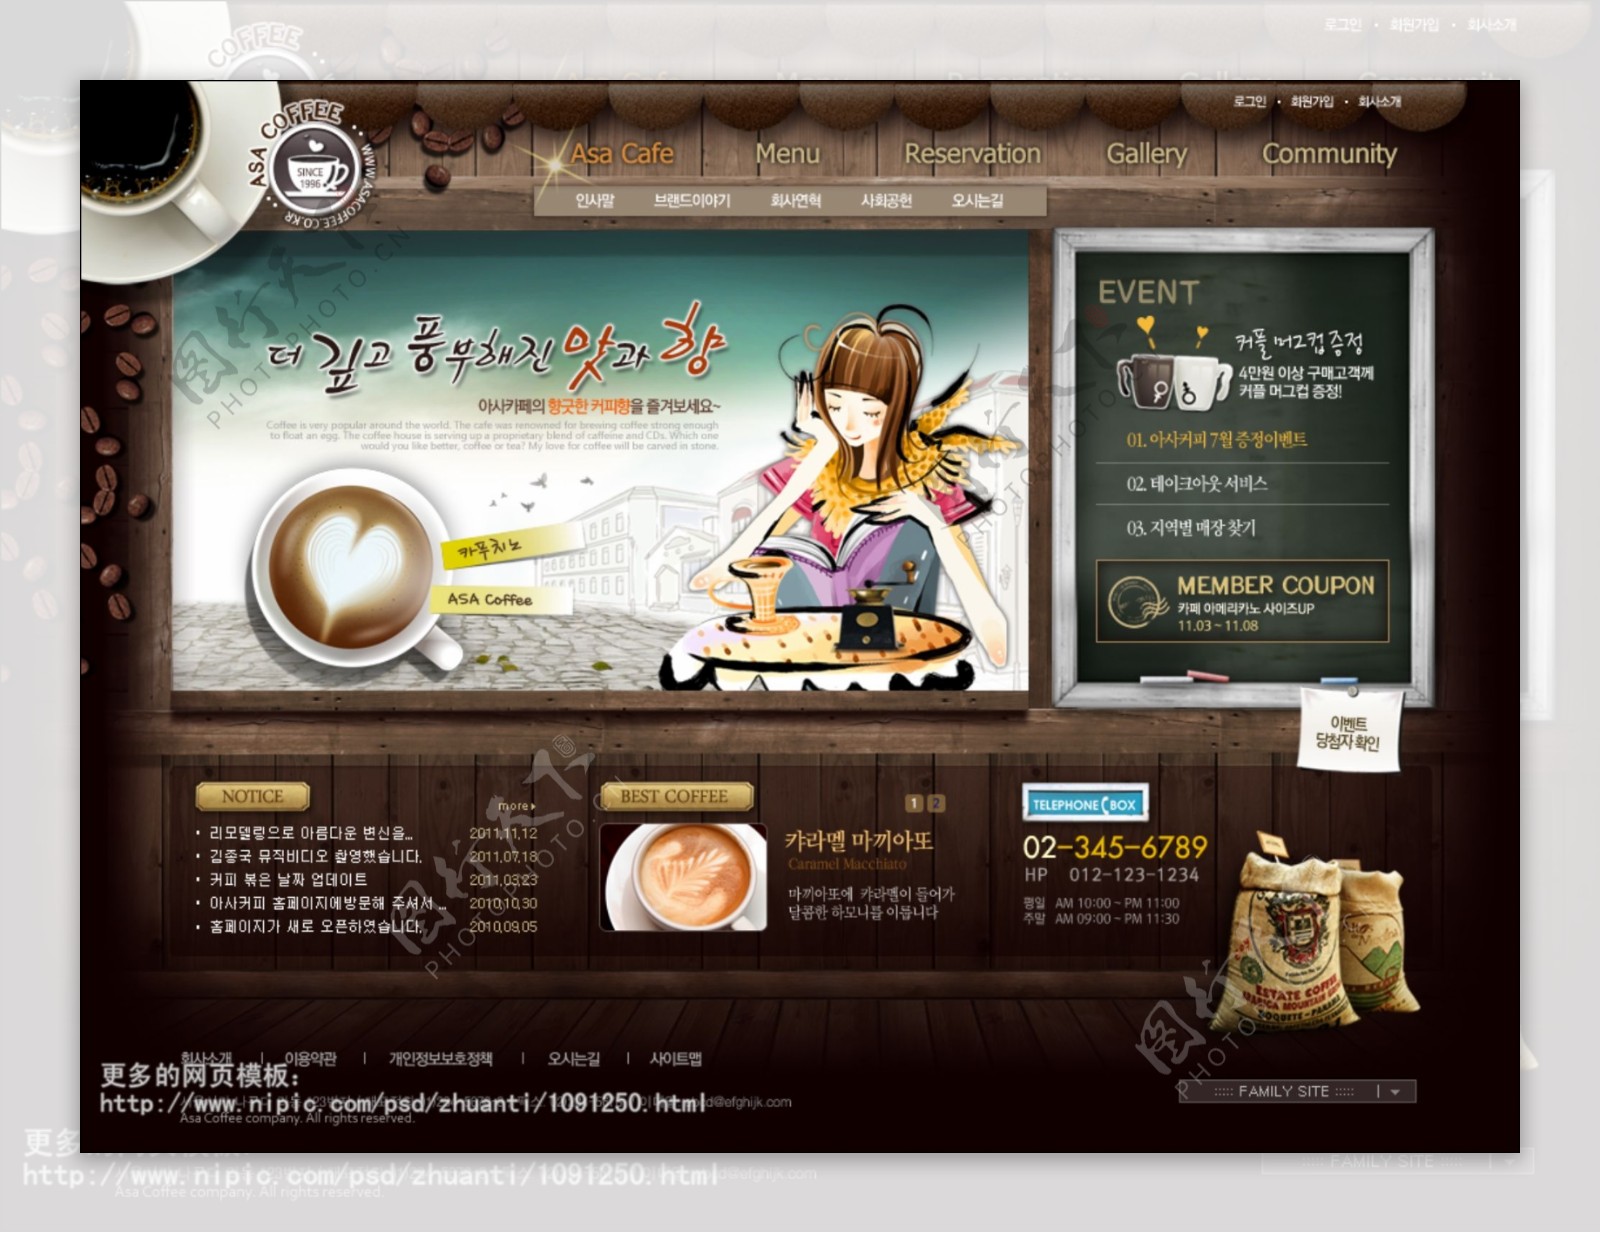 咖啡网站图片